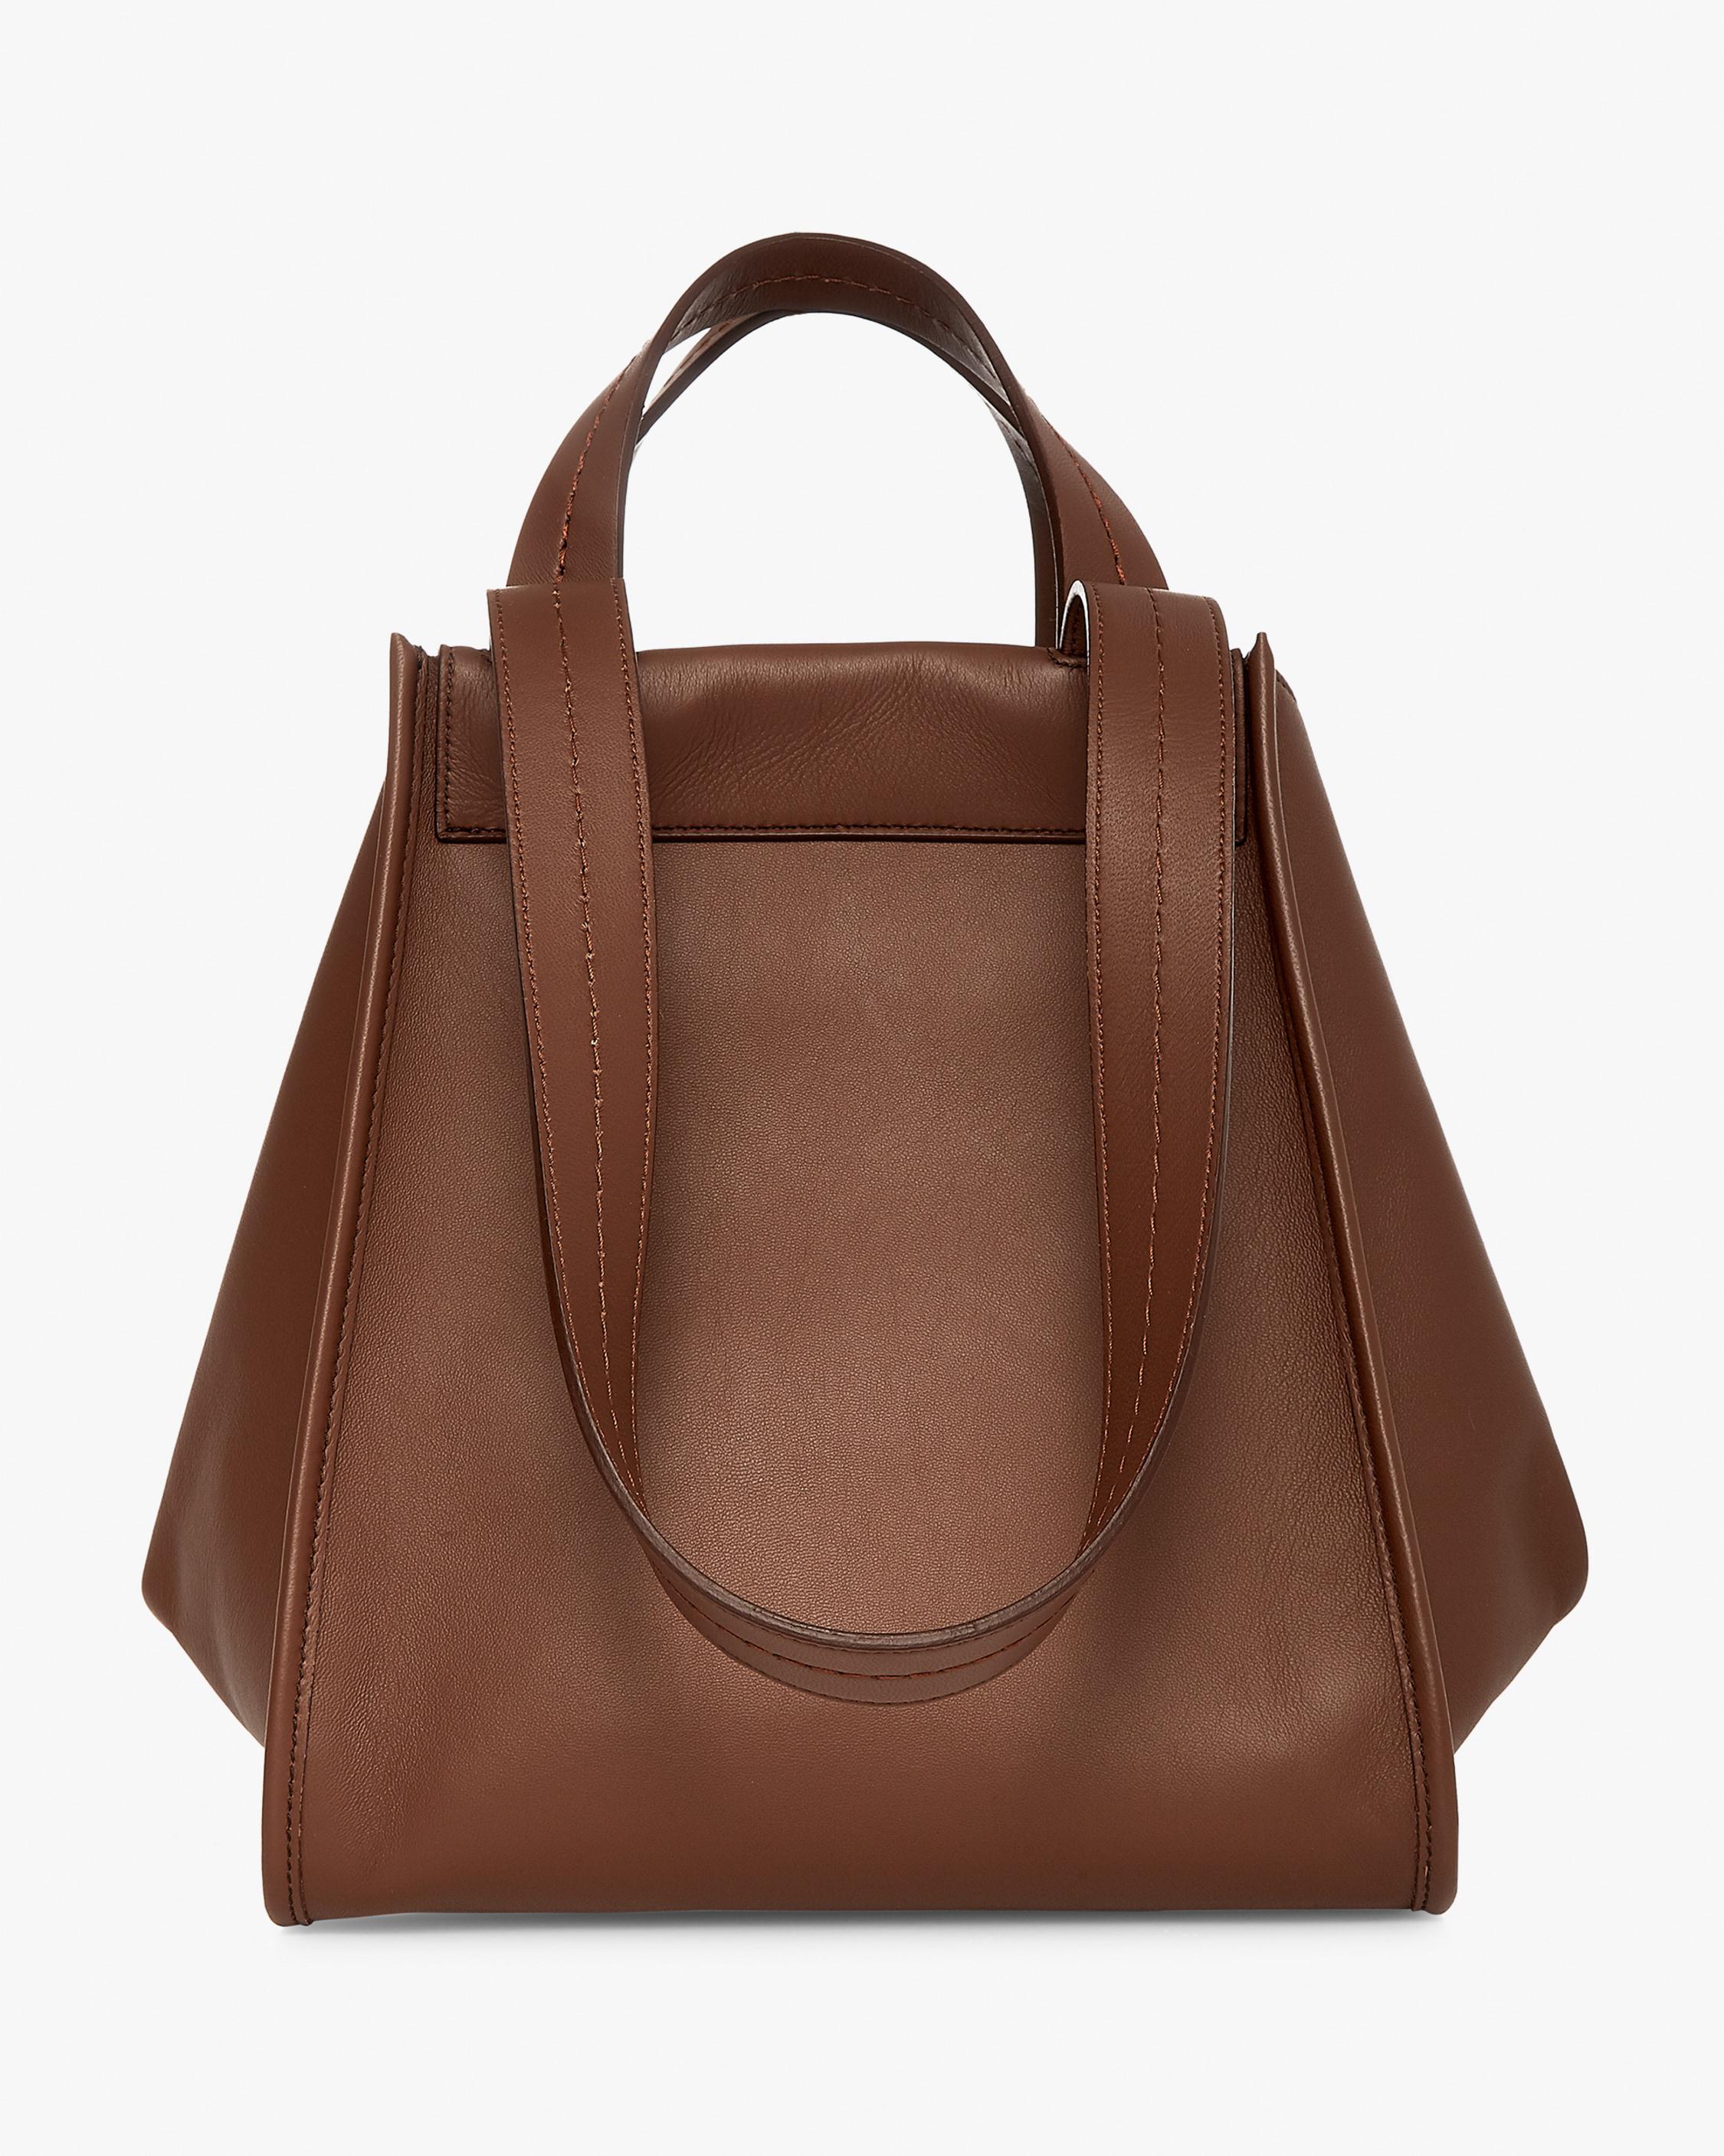 Max Mara Anita Reversible Leather Handbag in Sand (Brown) - Lyst